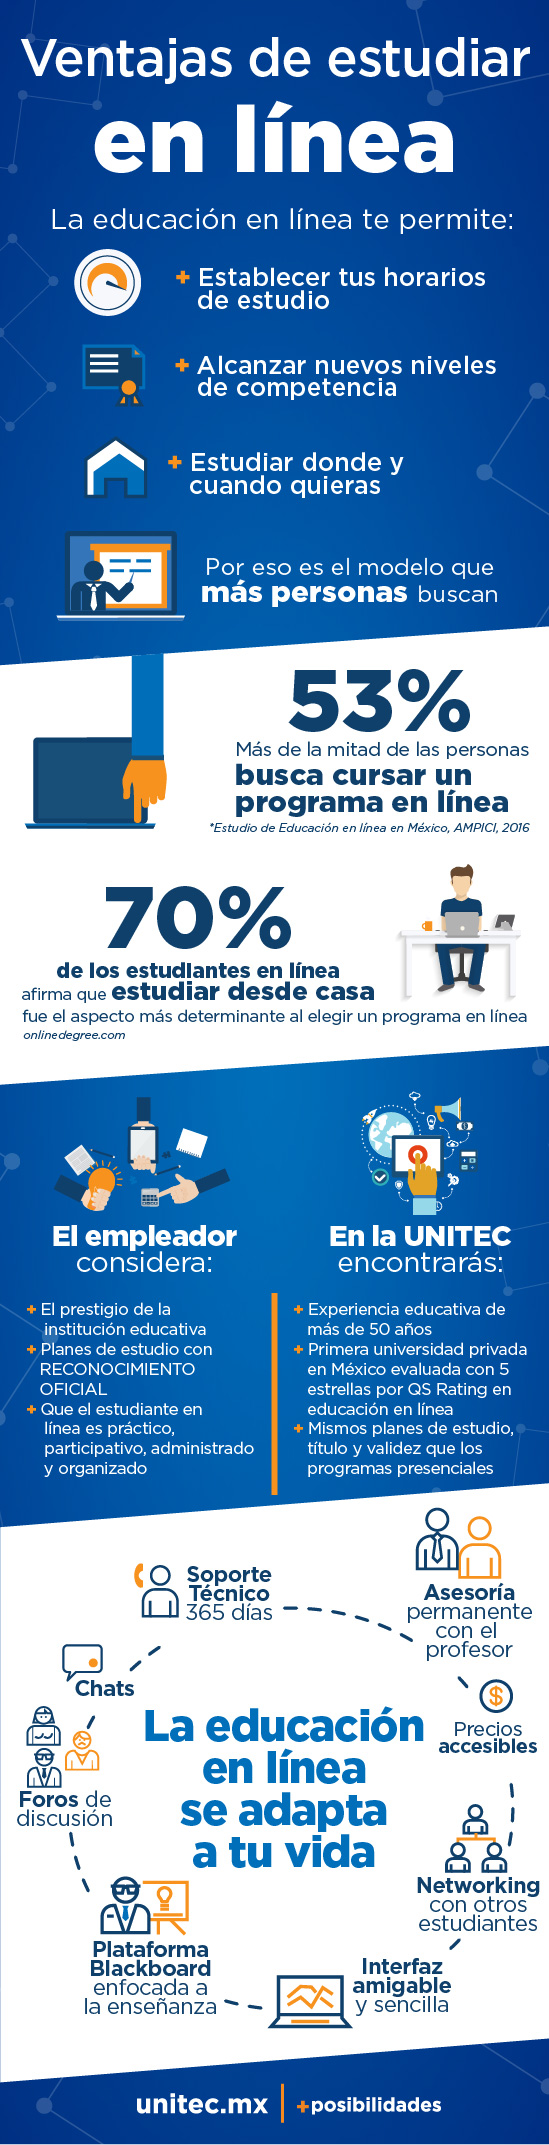 Licenciaturas en línea en la UNITEC: 10 razones para elegirlas